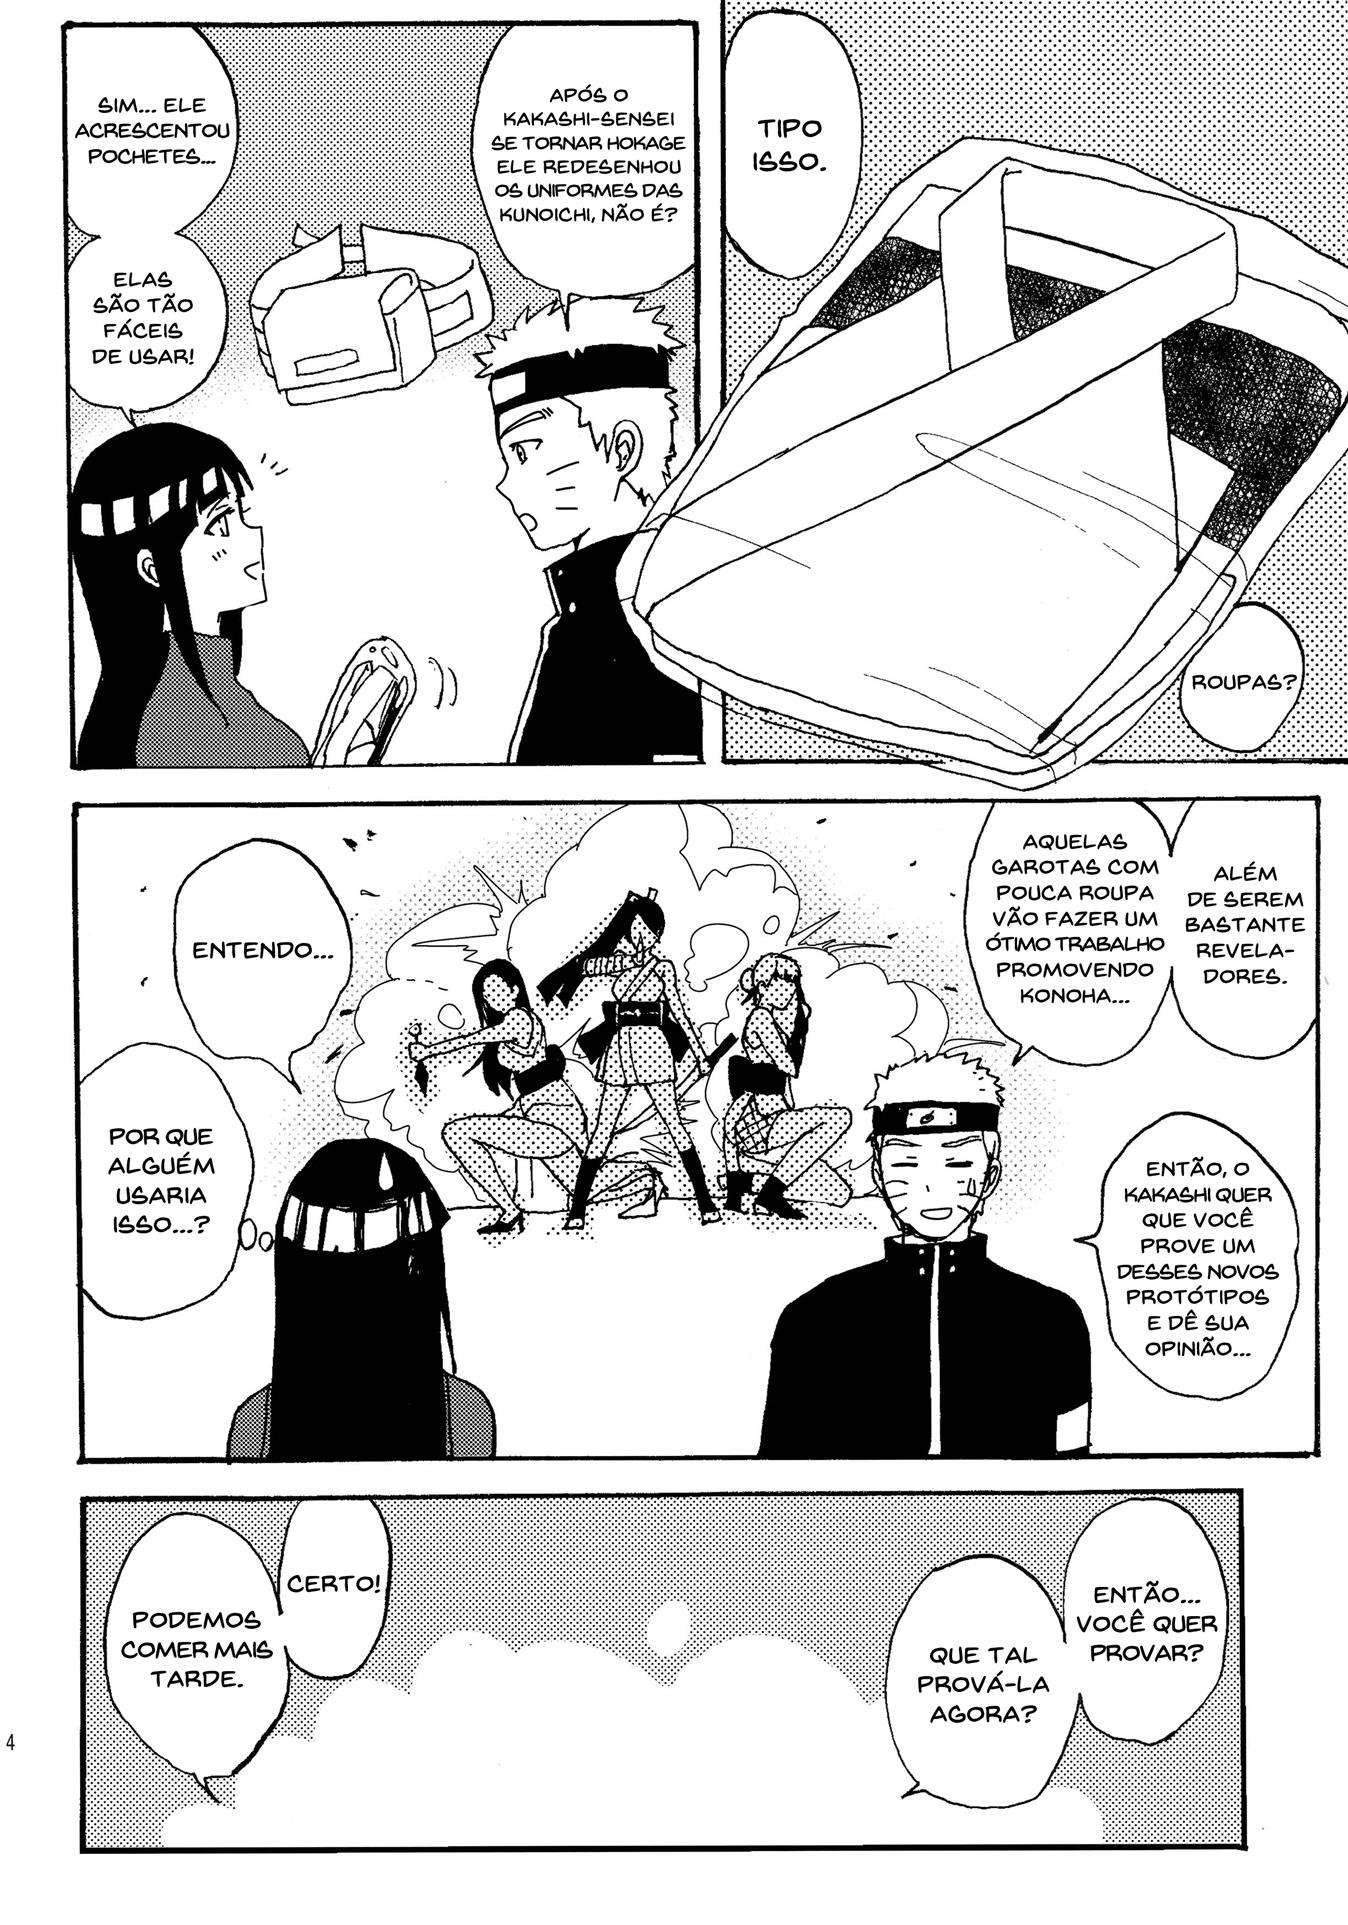 Naruto Hentai: Hinata provando o novo uniforme